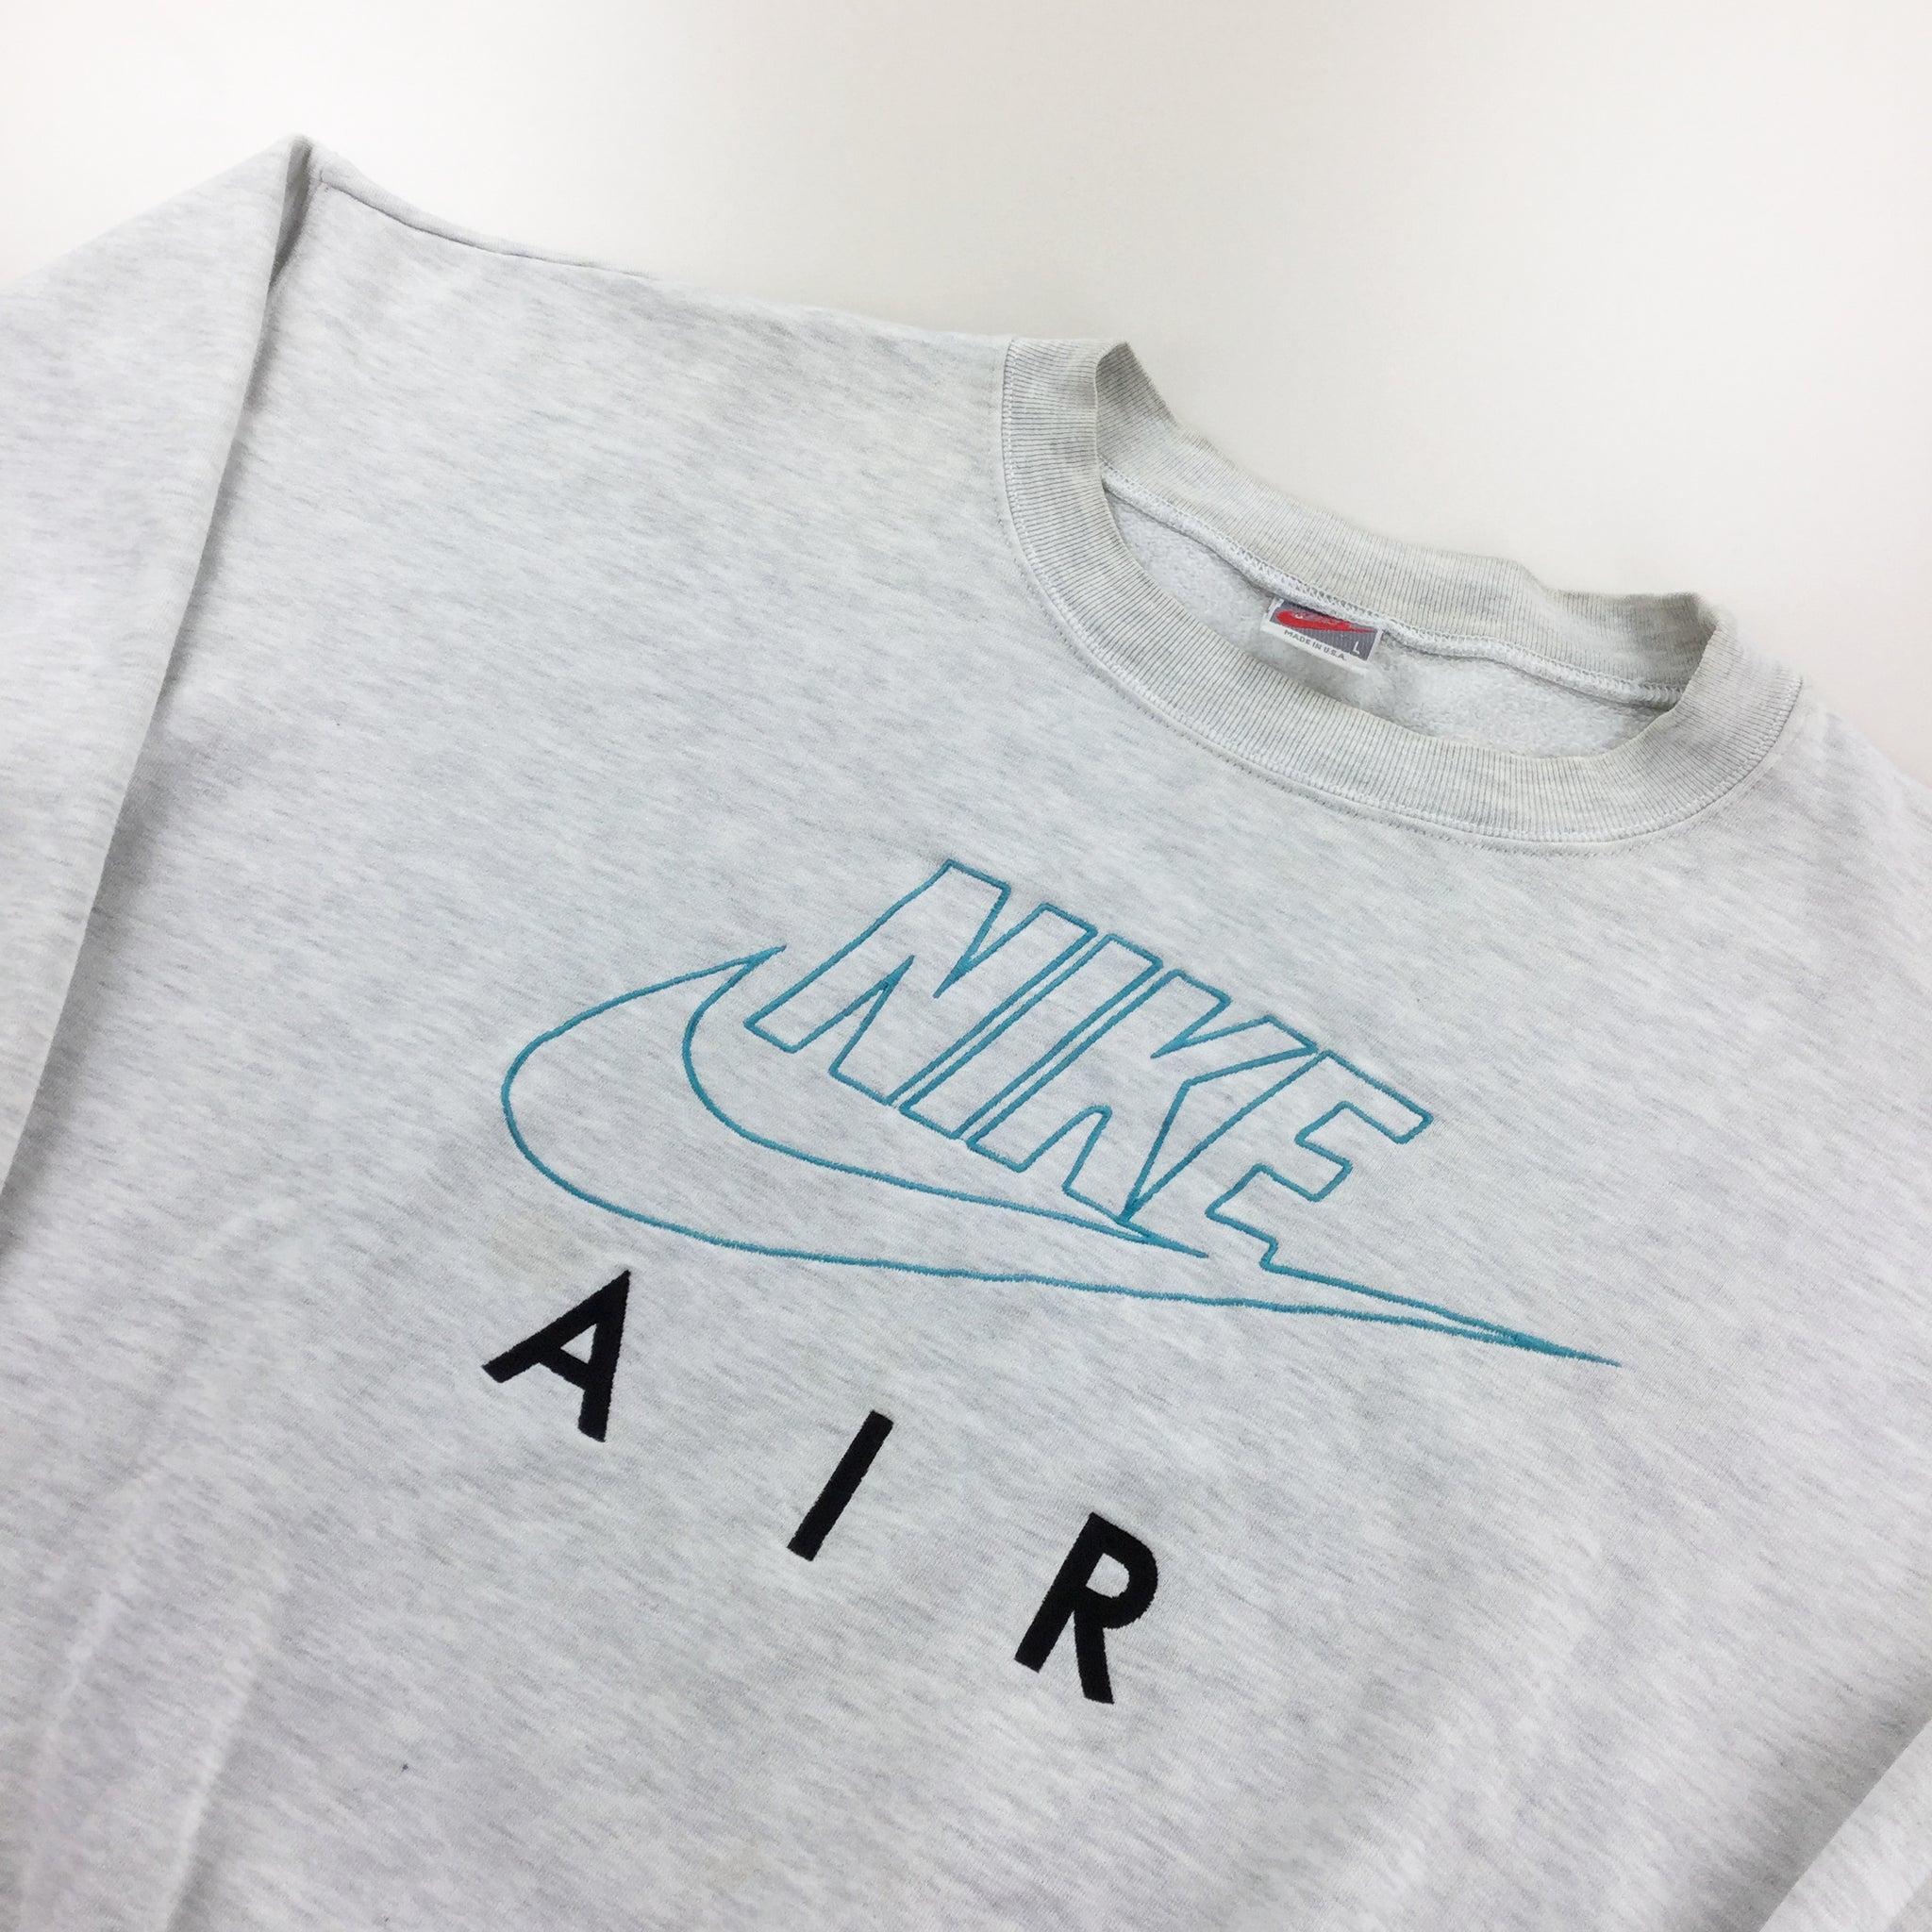 Nike Air 80s Sweatshirt - Large Premium Vintage OLESSTORE